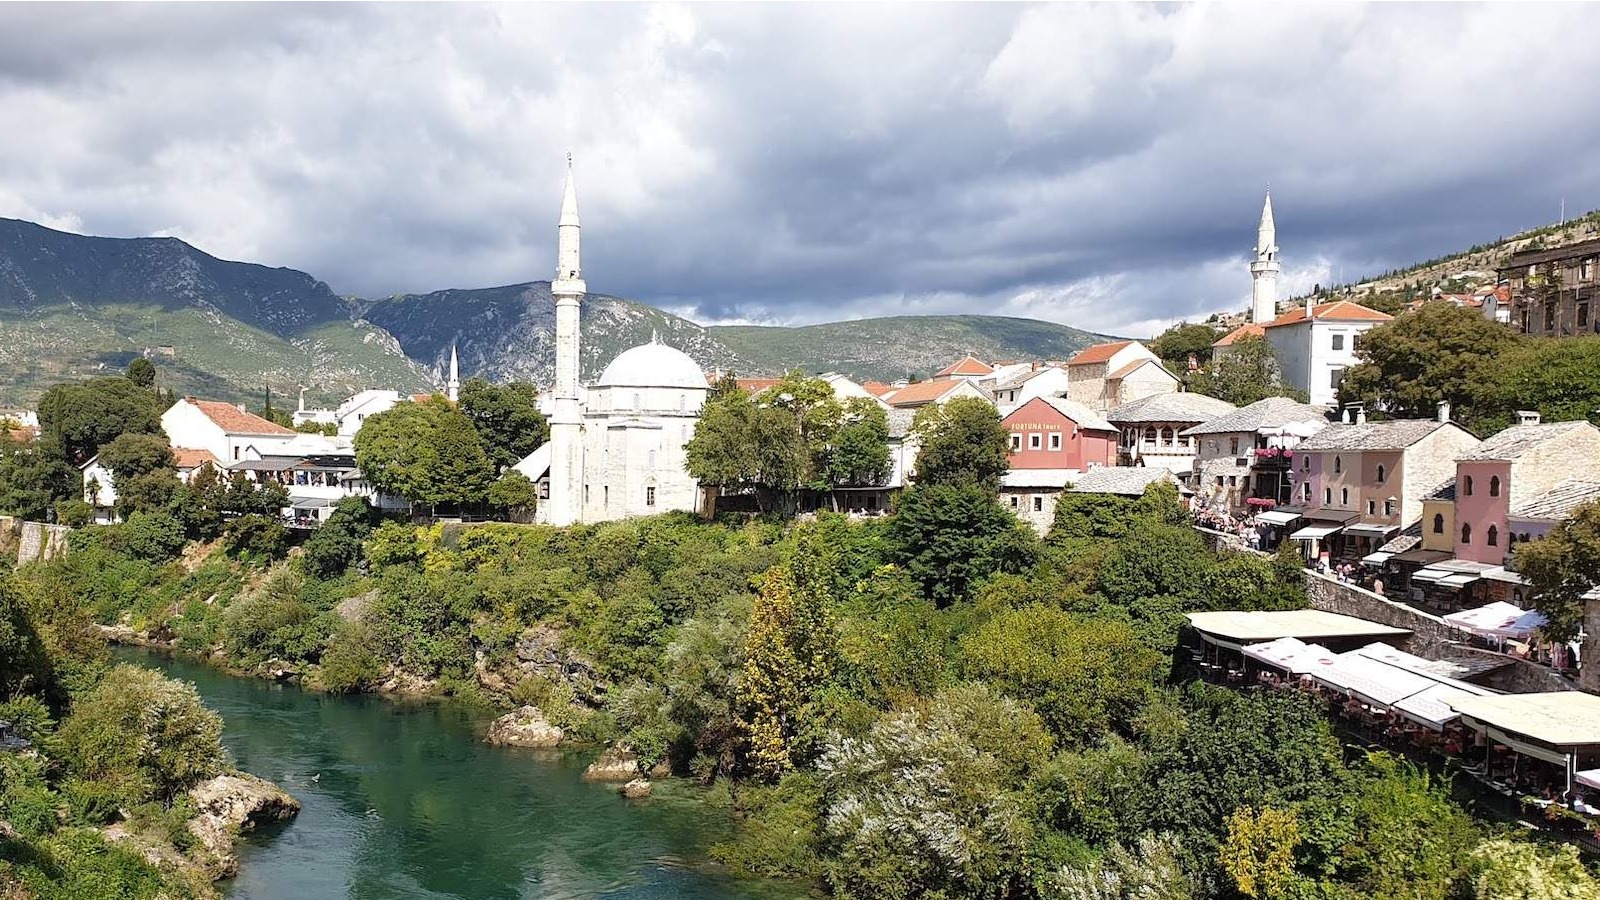 Organizatori manifestacije "Ramazan u Mostaru" očekuju više od 1000 postača na zajedničkom iftru